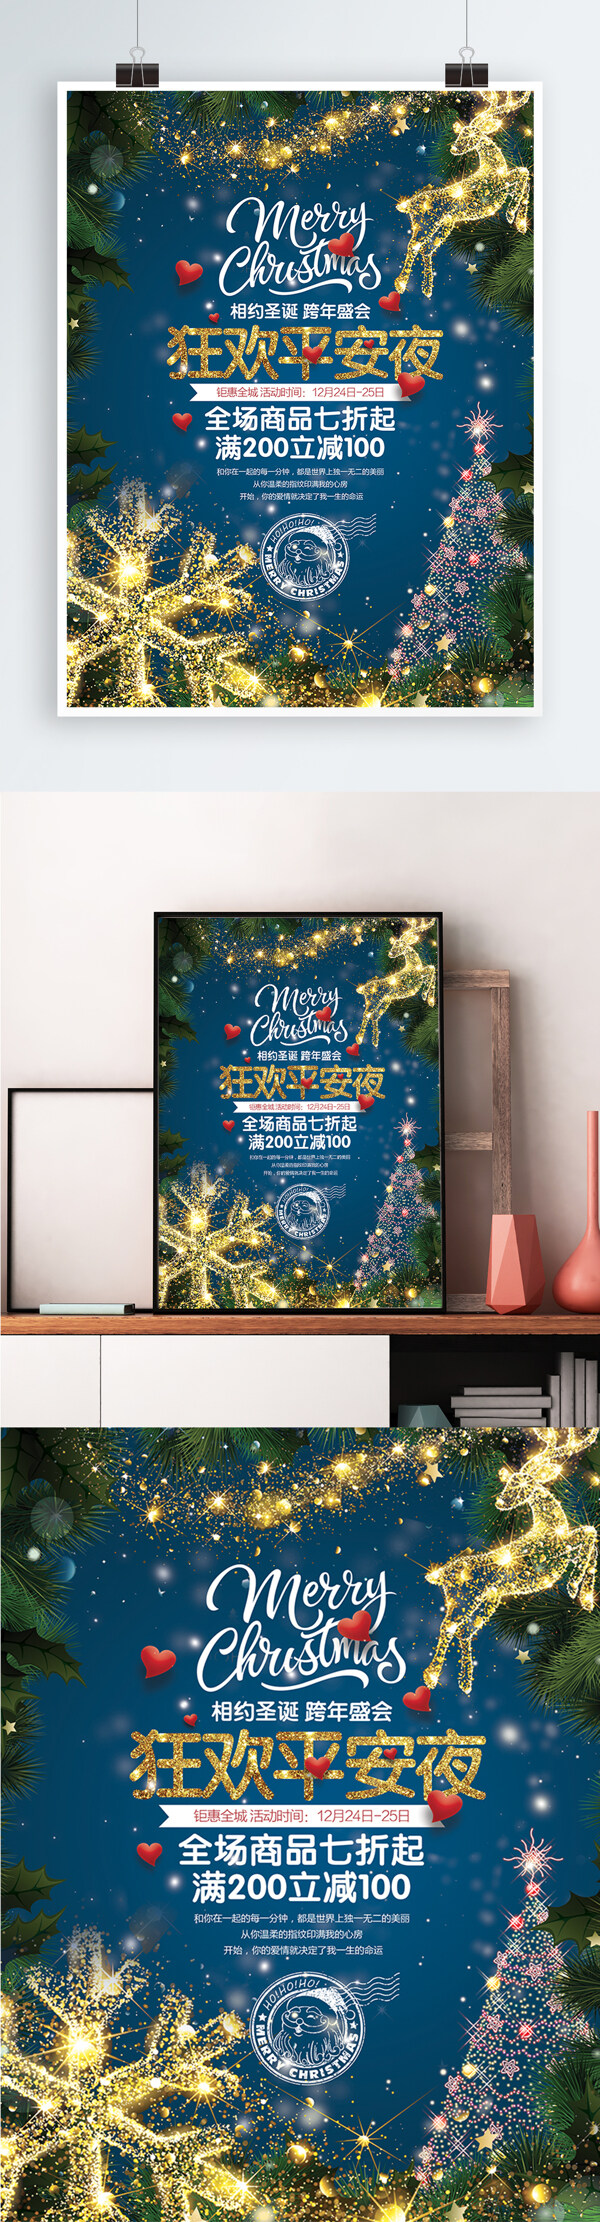 酷炫时尚狂欢平安夜圣诞节宣传促销海报展板